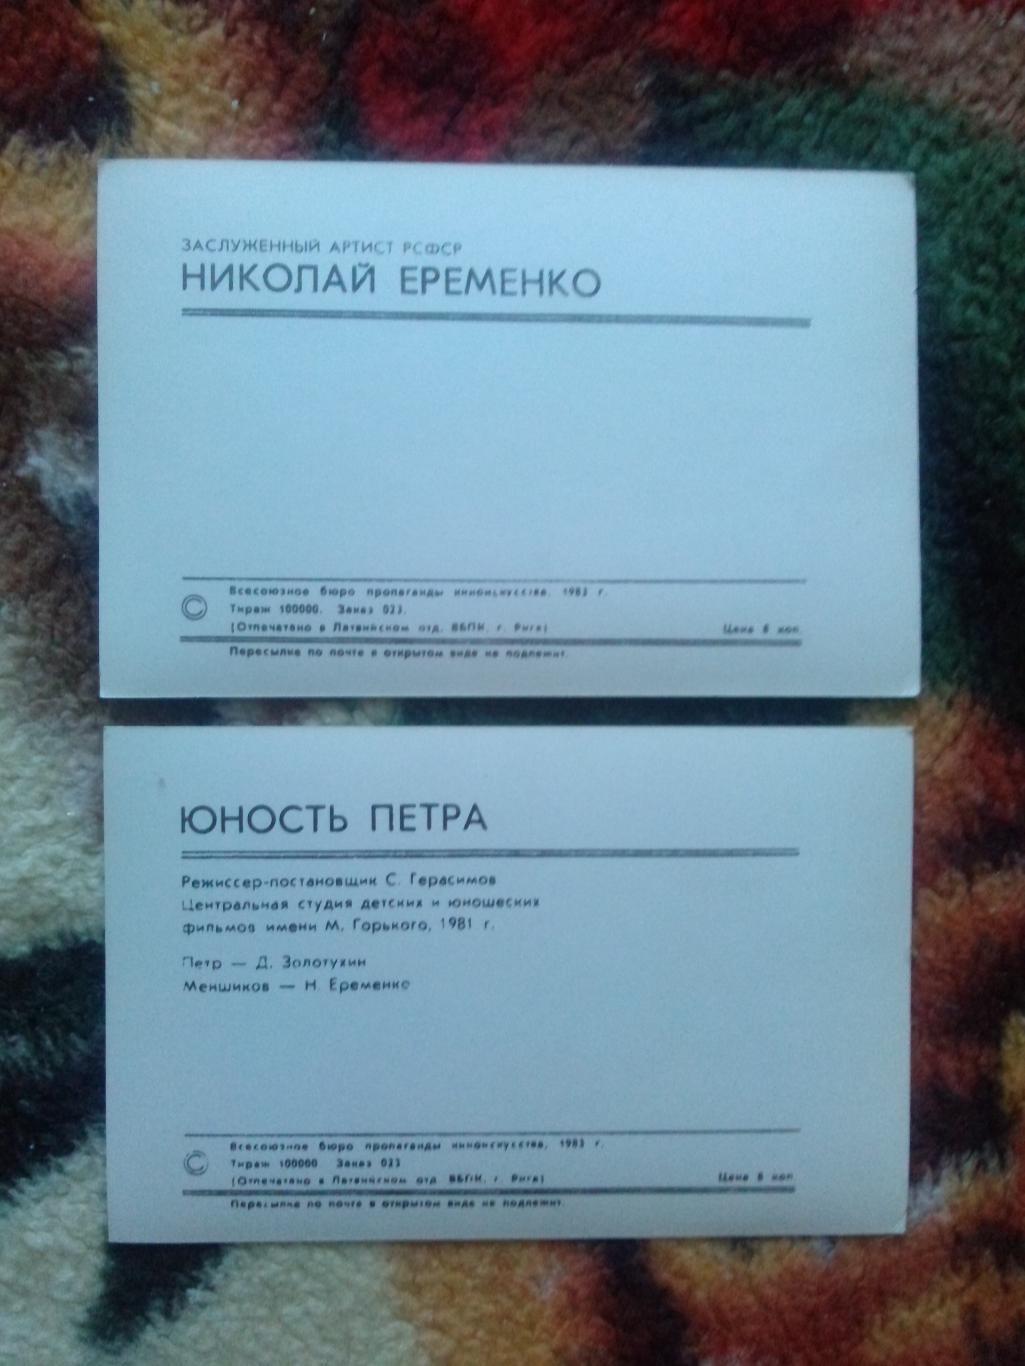 Артисты кино и театра СССР : Николай Еременко 1983 г.полный набор-10 открыток 7